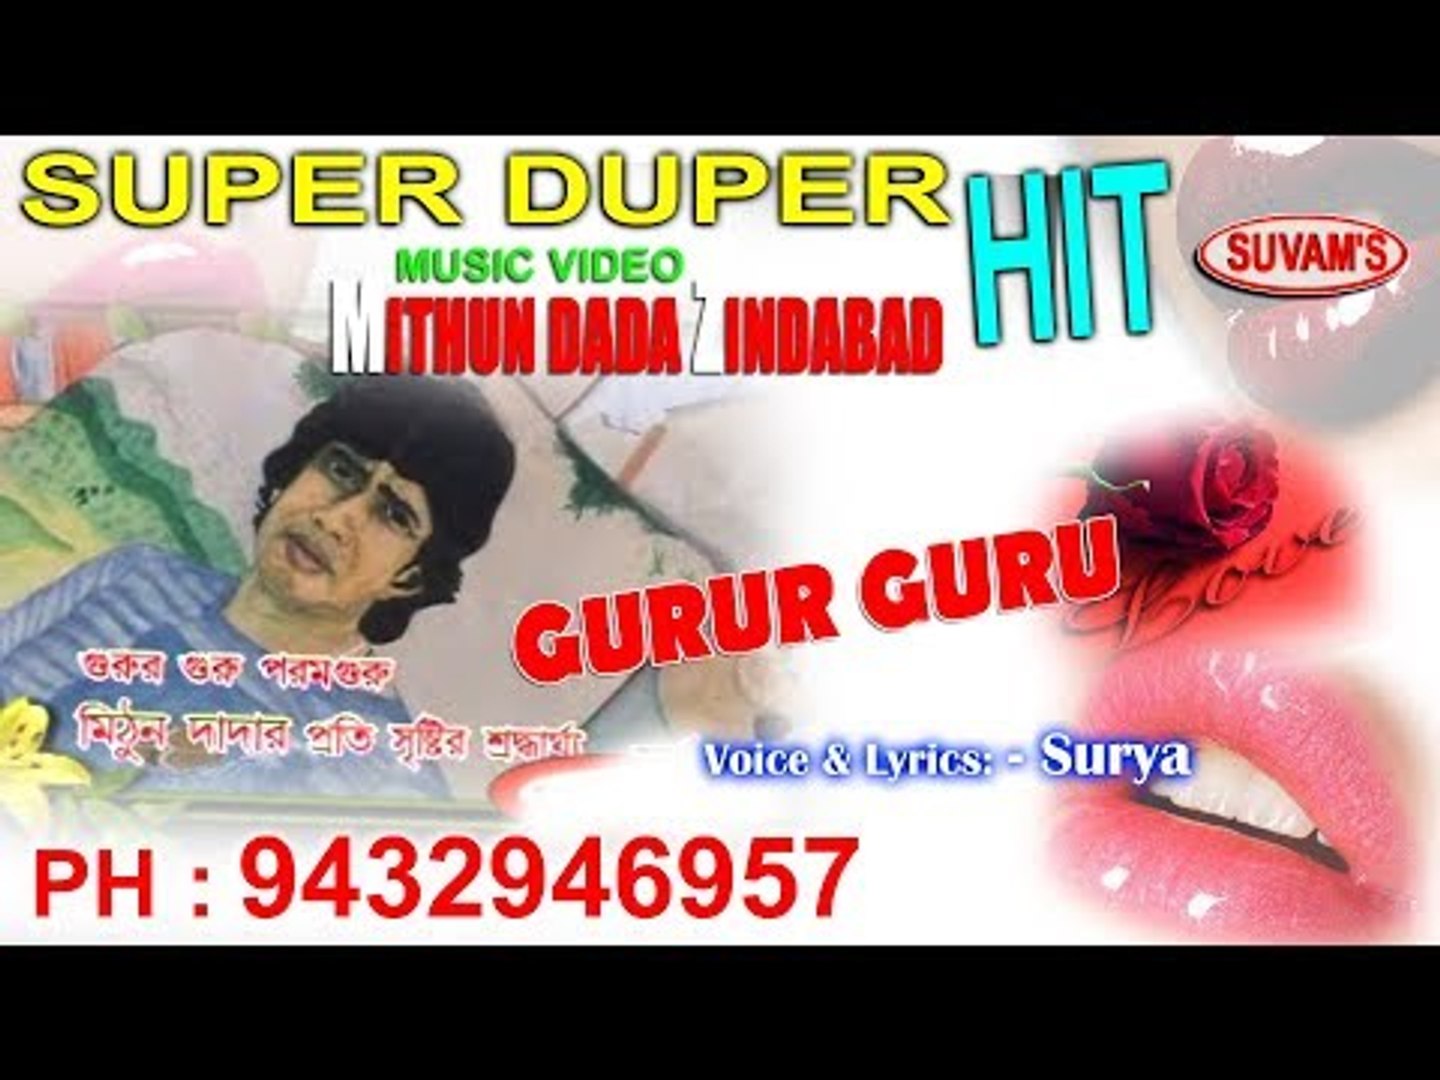 GURUR GURU, MITHUN DADA ZINDABAD, Bengali Super Hit, Suvam's Music